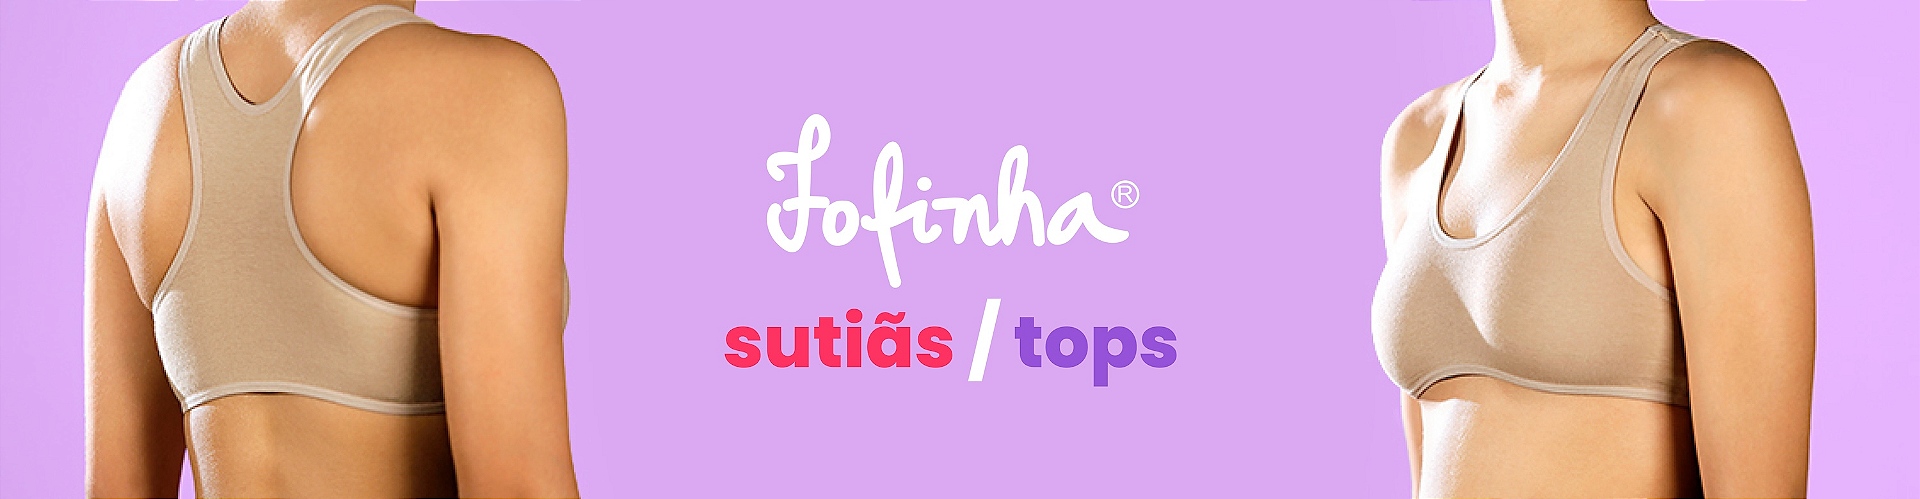 FOFINHA_TOP